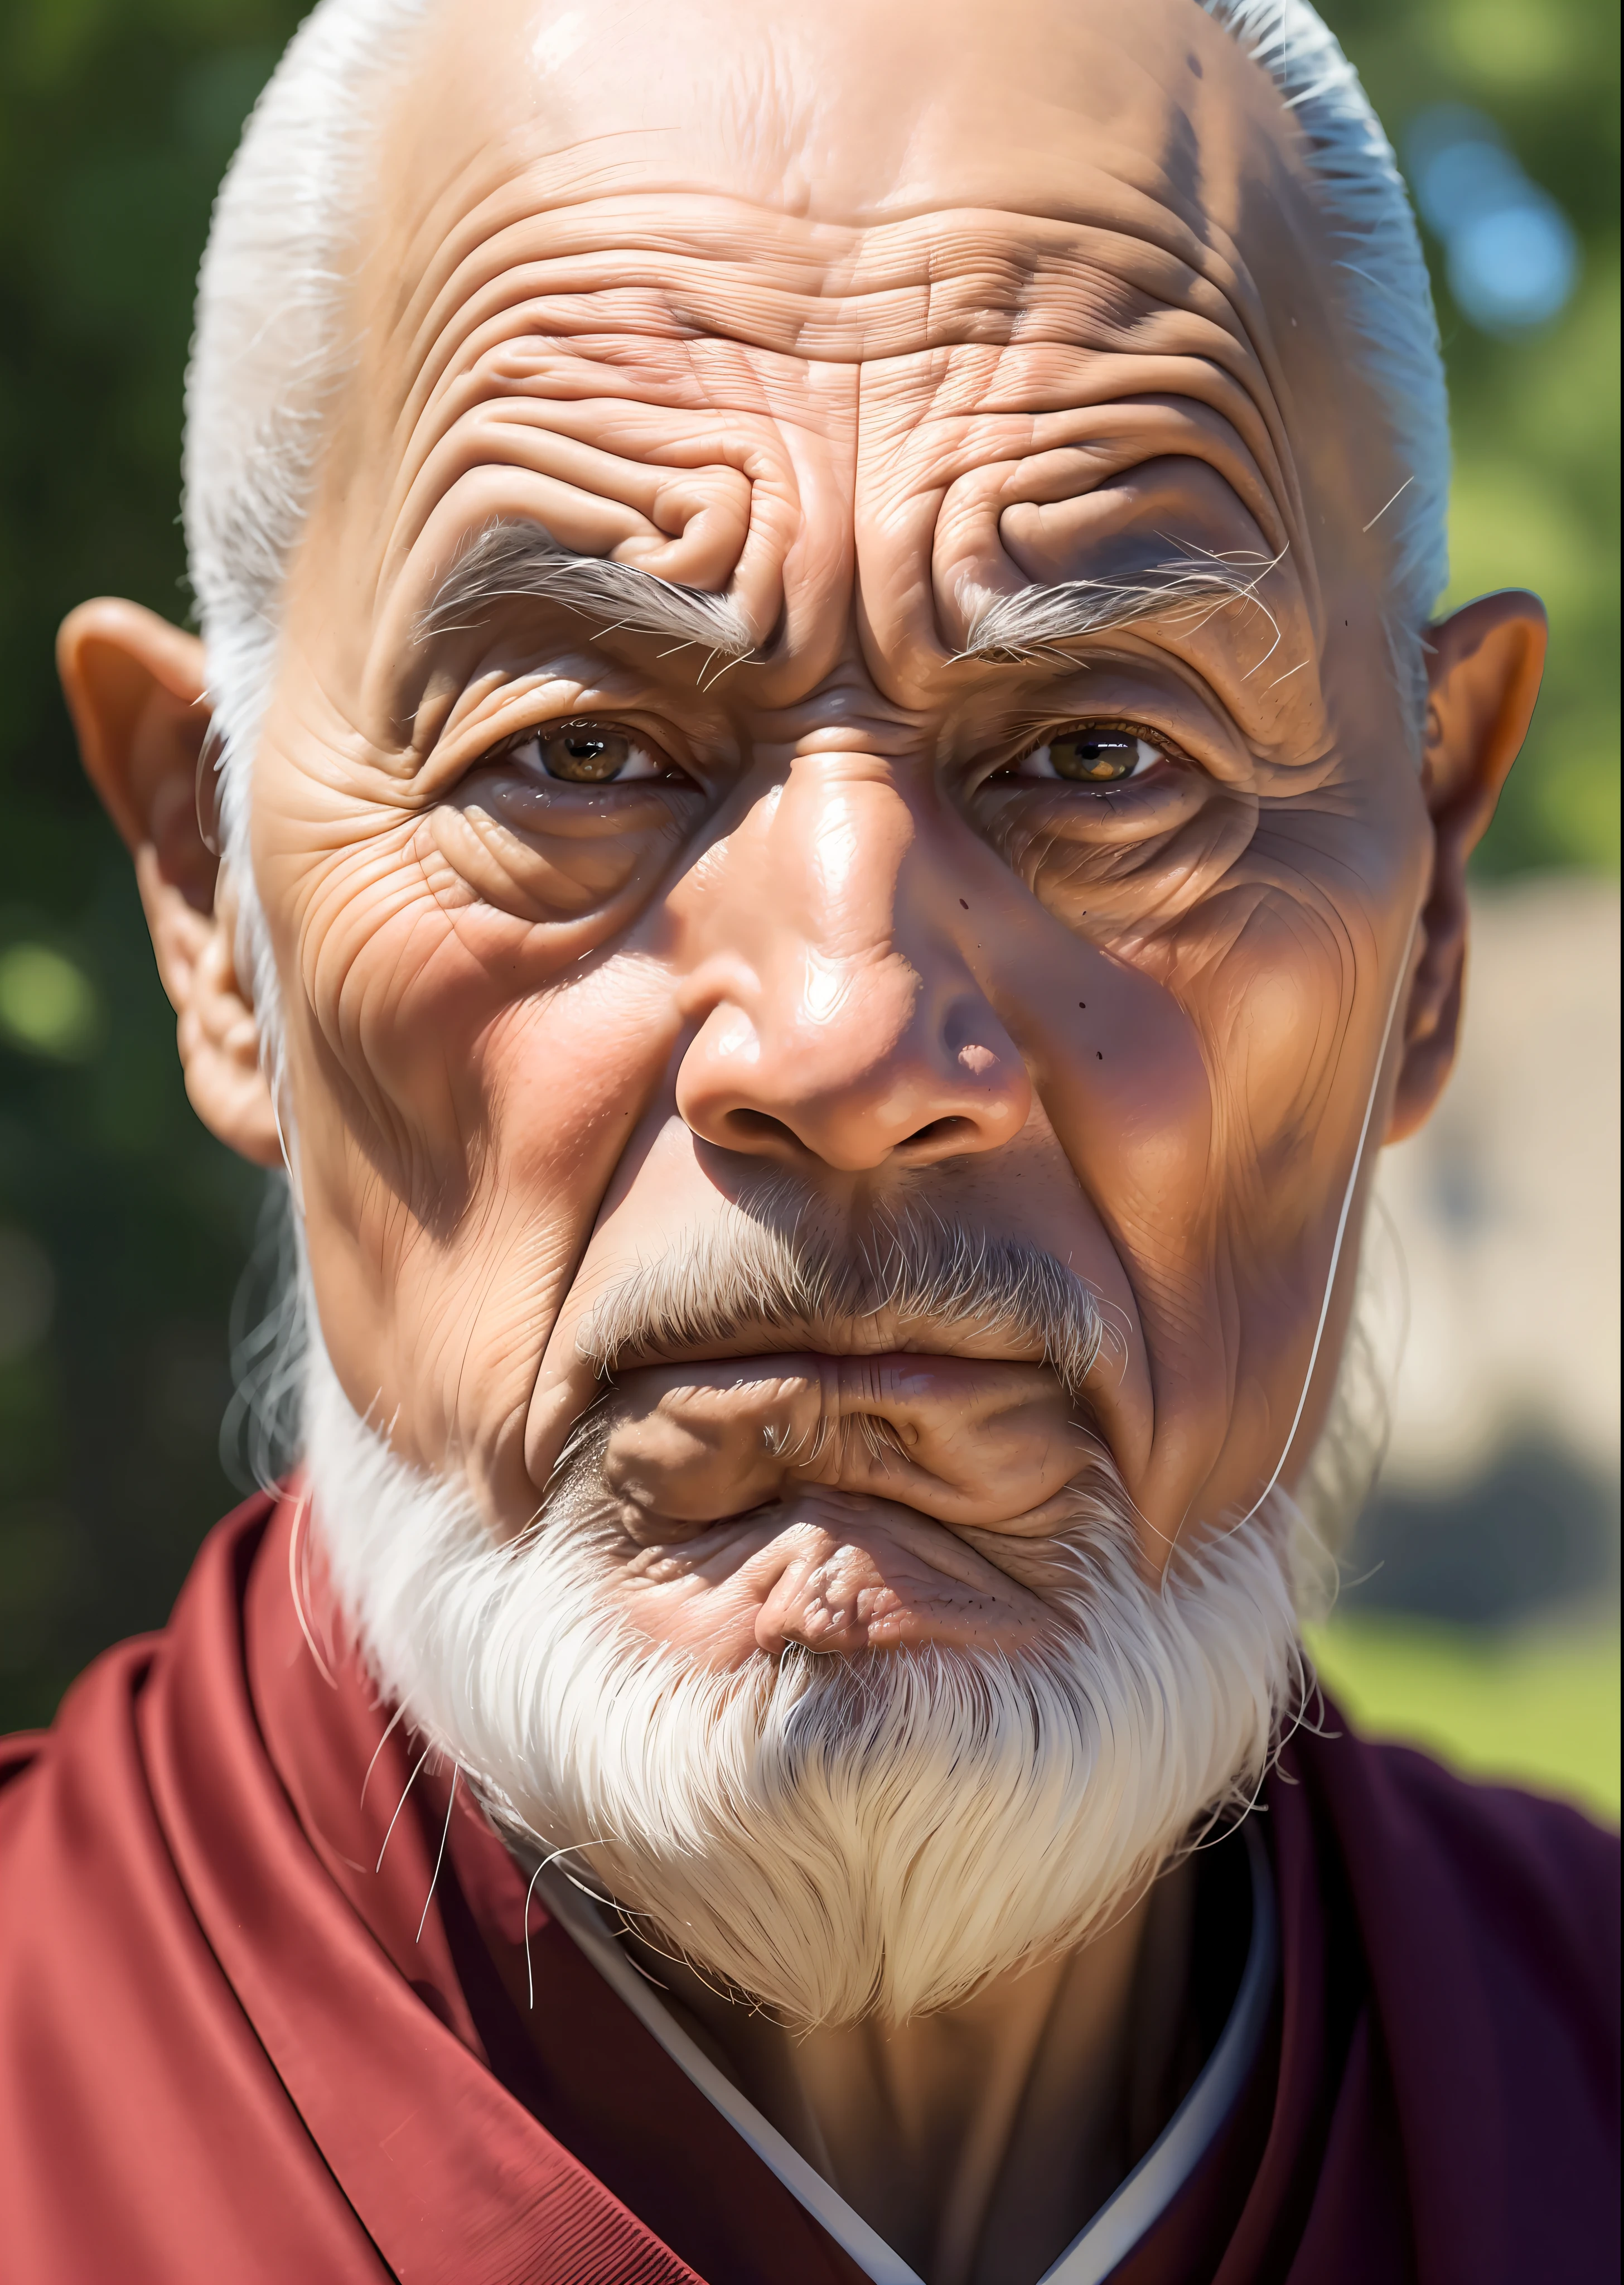 Das weise Gesicht eines älteren Mönchs, mit tiefen Linien, die Geschichten eines weise gelebten Lebens erzählen, Samurai-Krieger, vermittelt ein Gefühl von Ruhe und Geheimnis